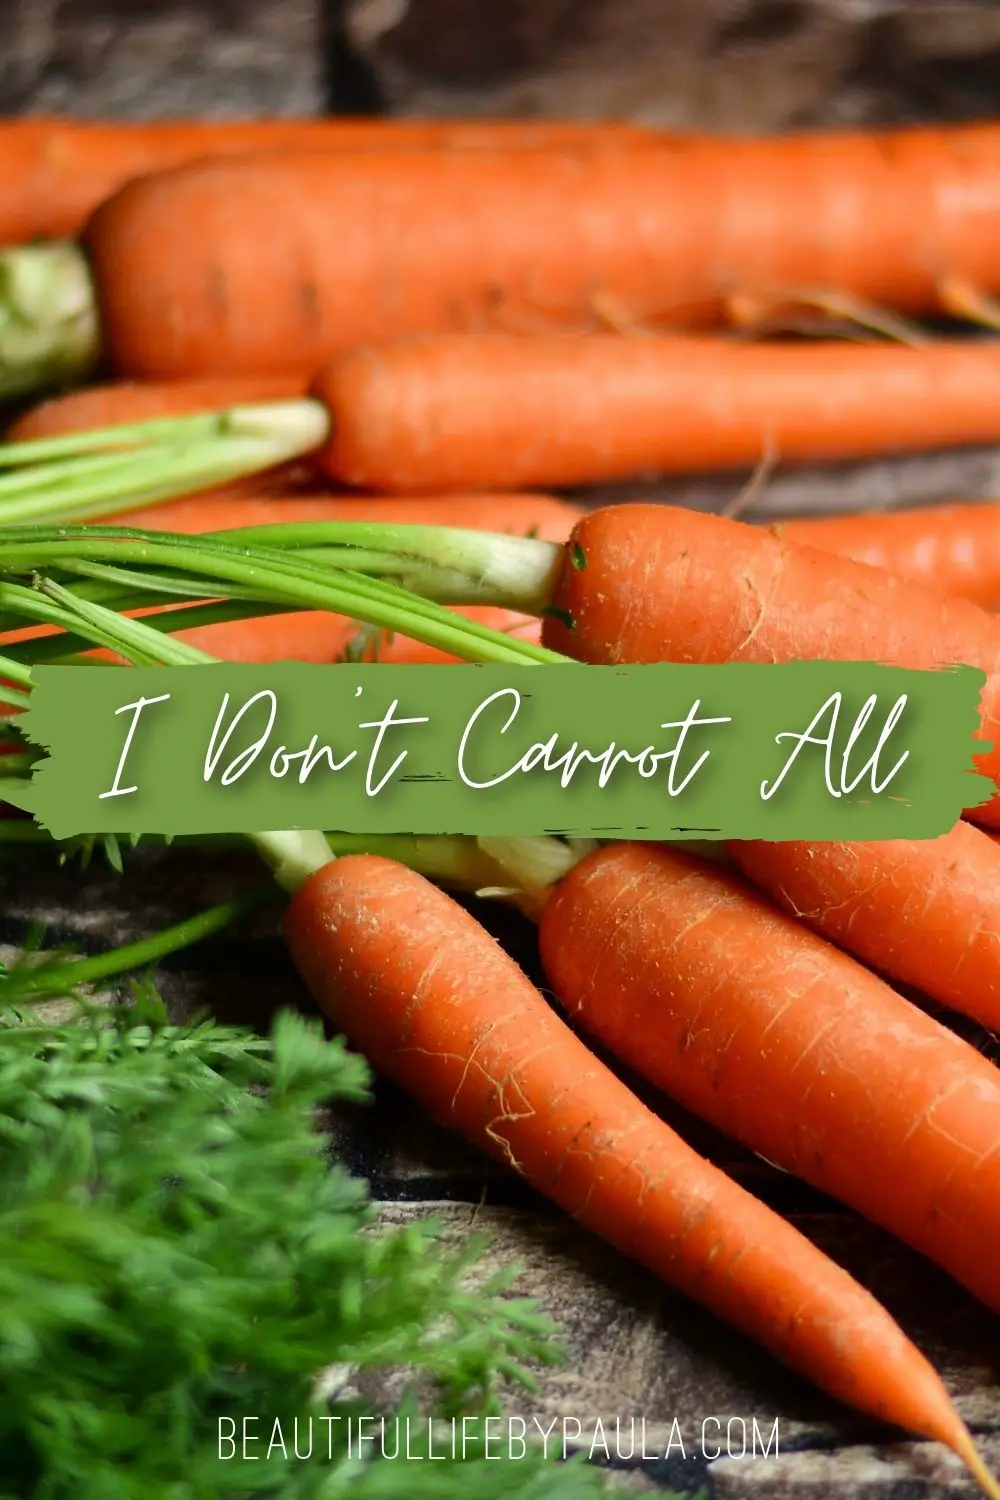 I don't carrot all pun